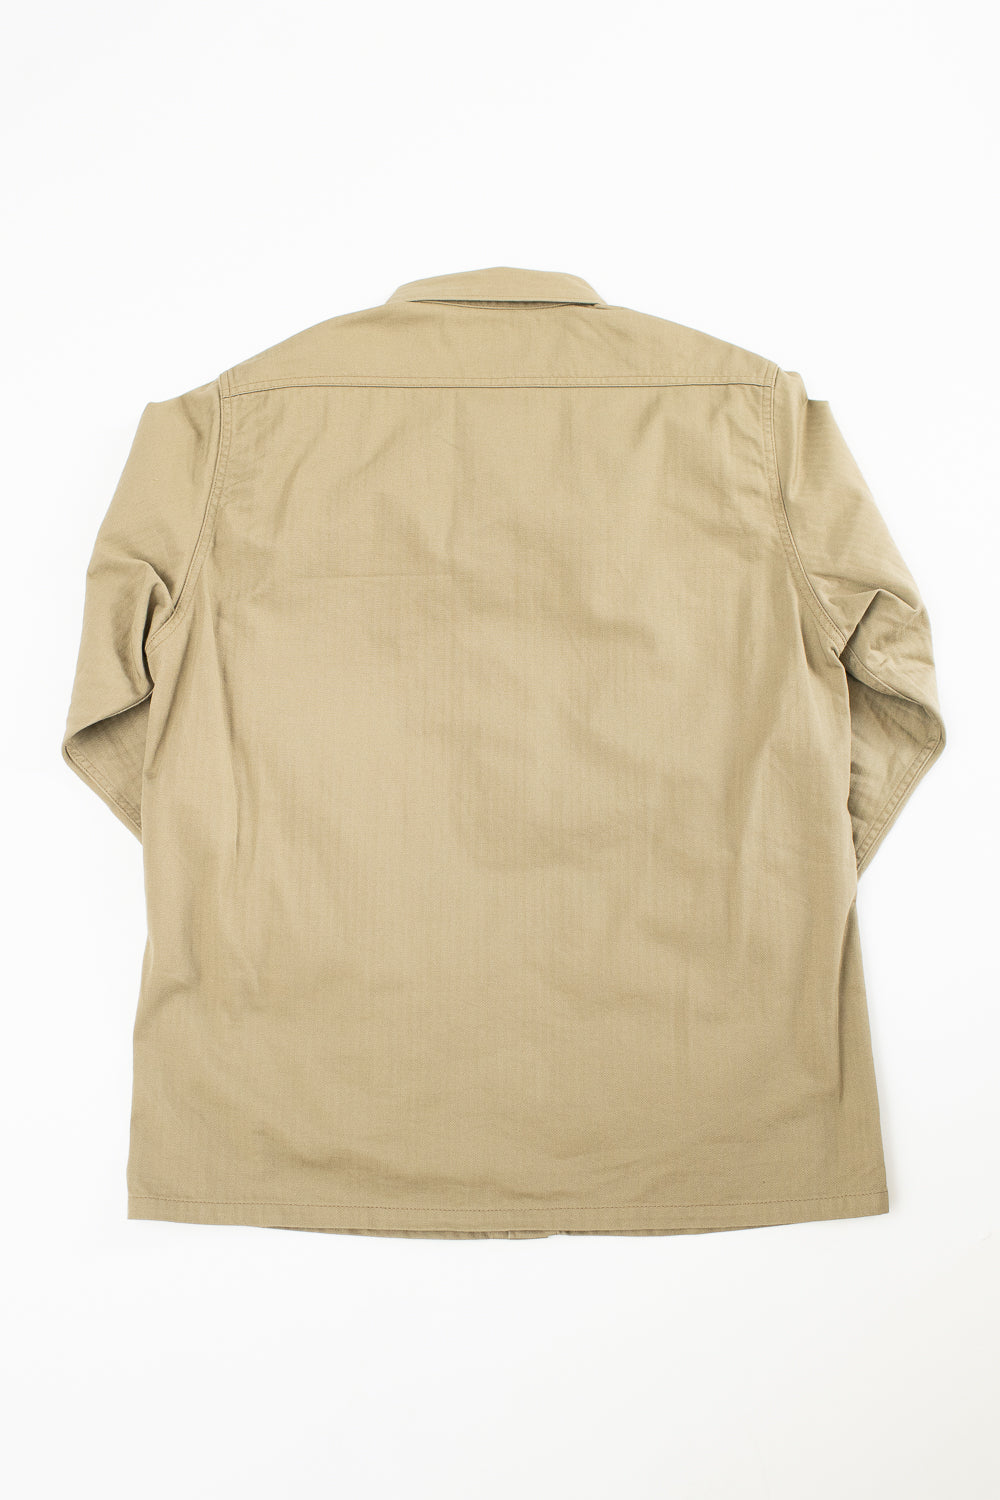 IHSH-385-BEI - 9oz Herringbone Military Shirt - Beige